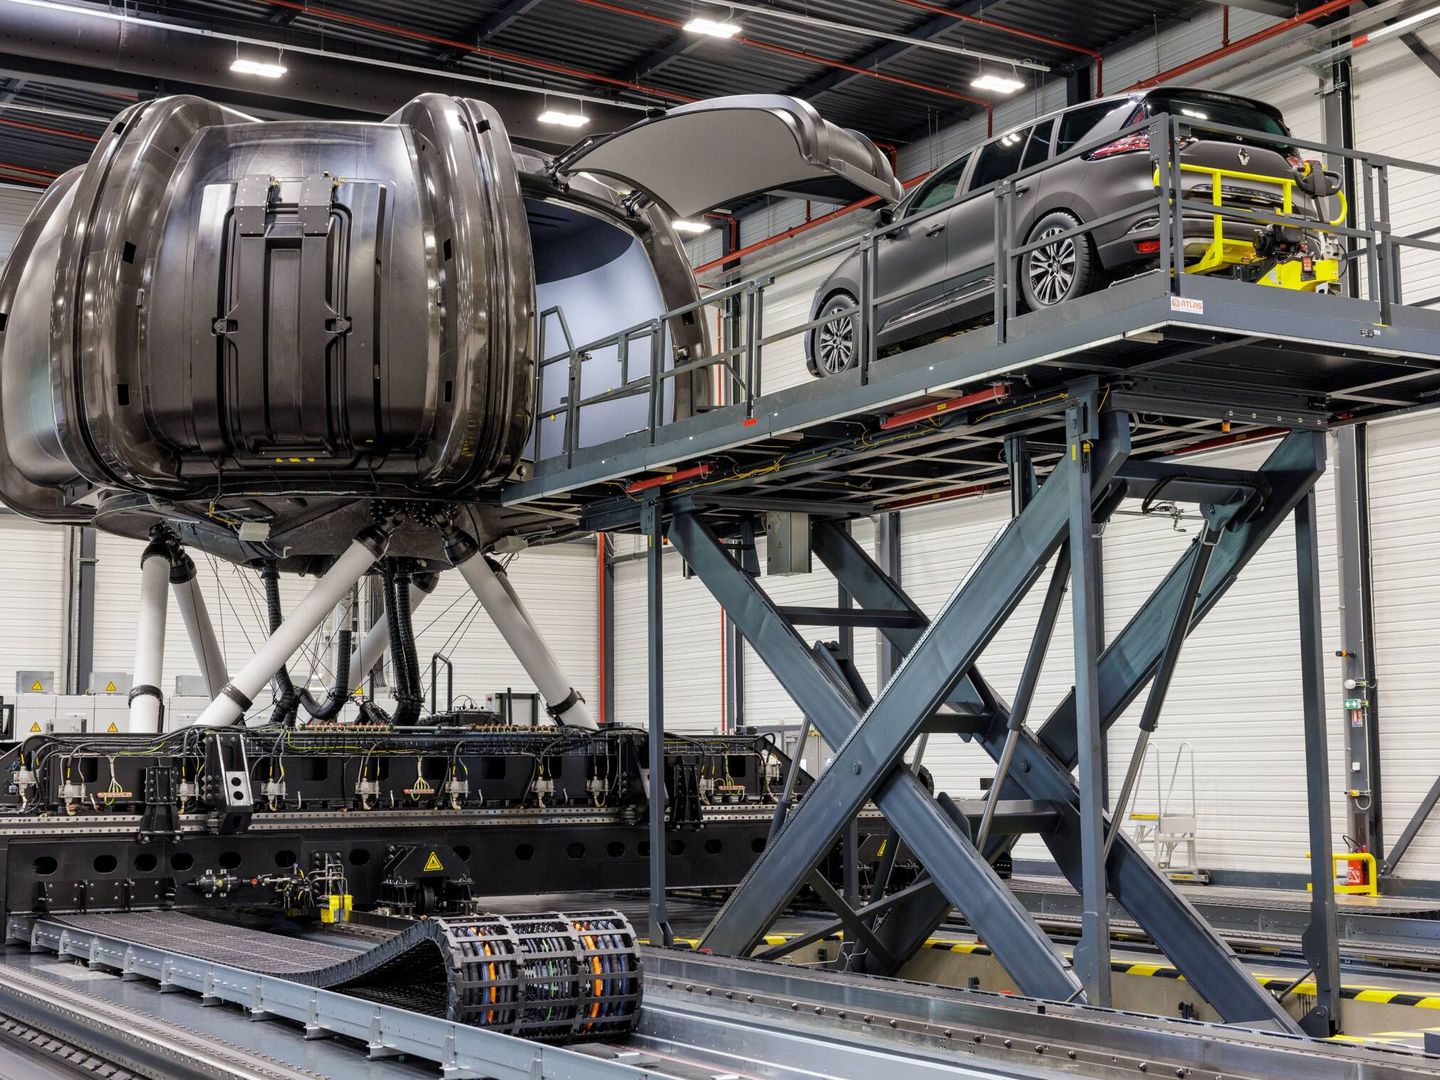 El sistema central del laboratorio pesa 90 toneladas, y es capaz de generar aceleraciones de 1 G.